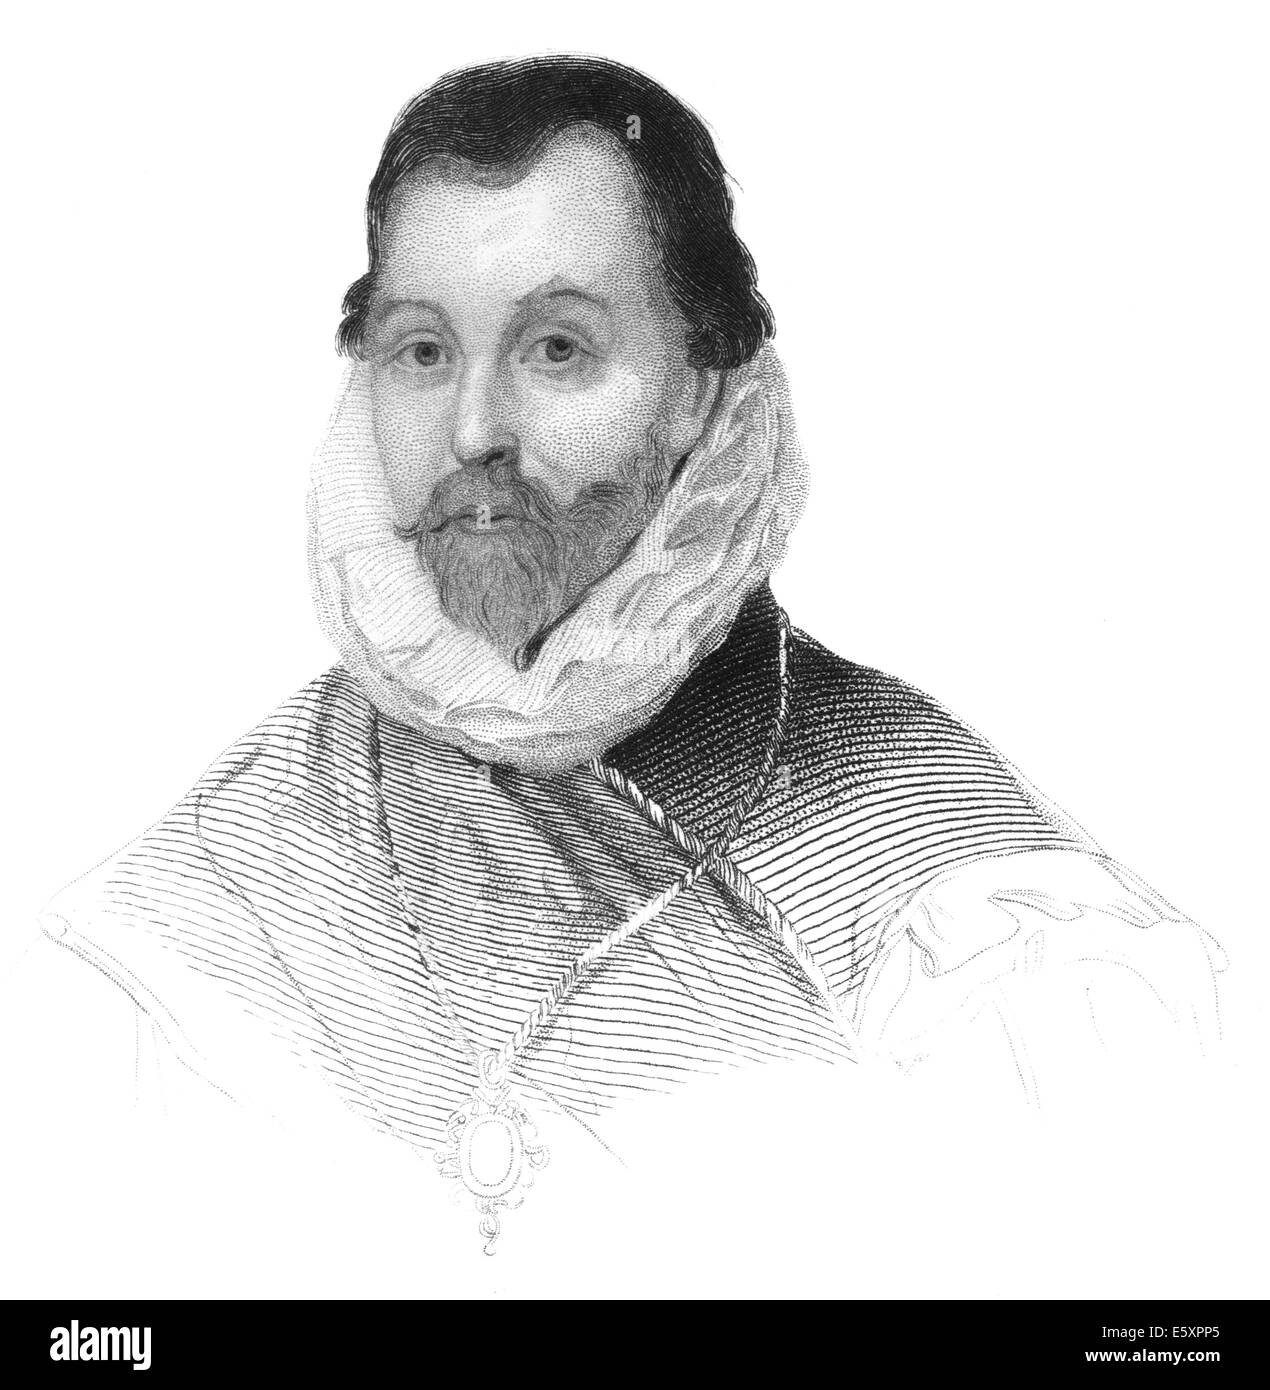 Sir Francis Drake, vers 1540 - 1596, un marin anglais, pirate, explorateur, Vice-amiral et le premier britannique, Anglais Banque D'Images